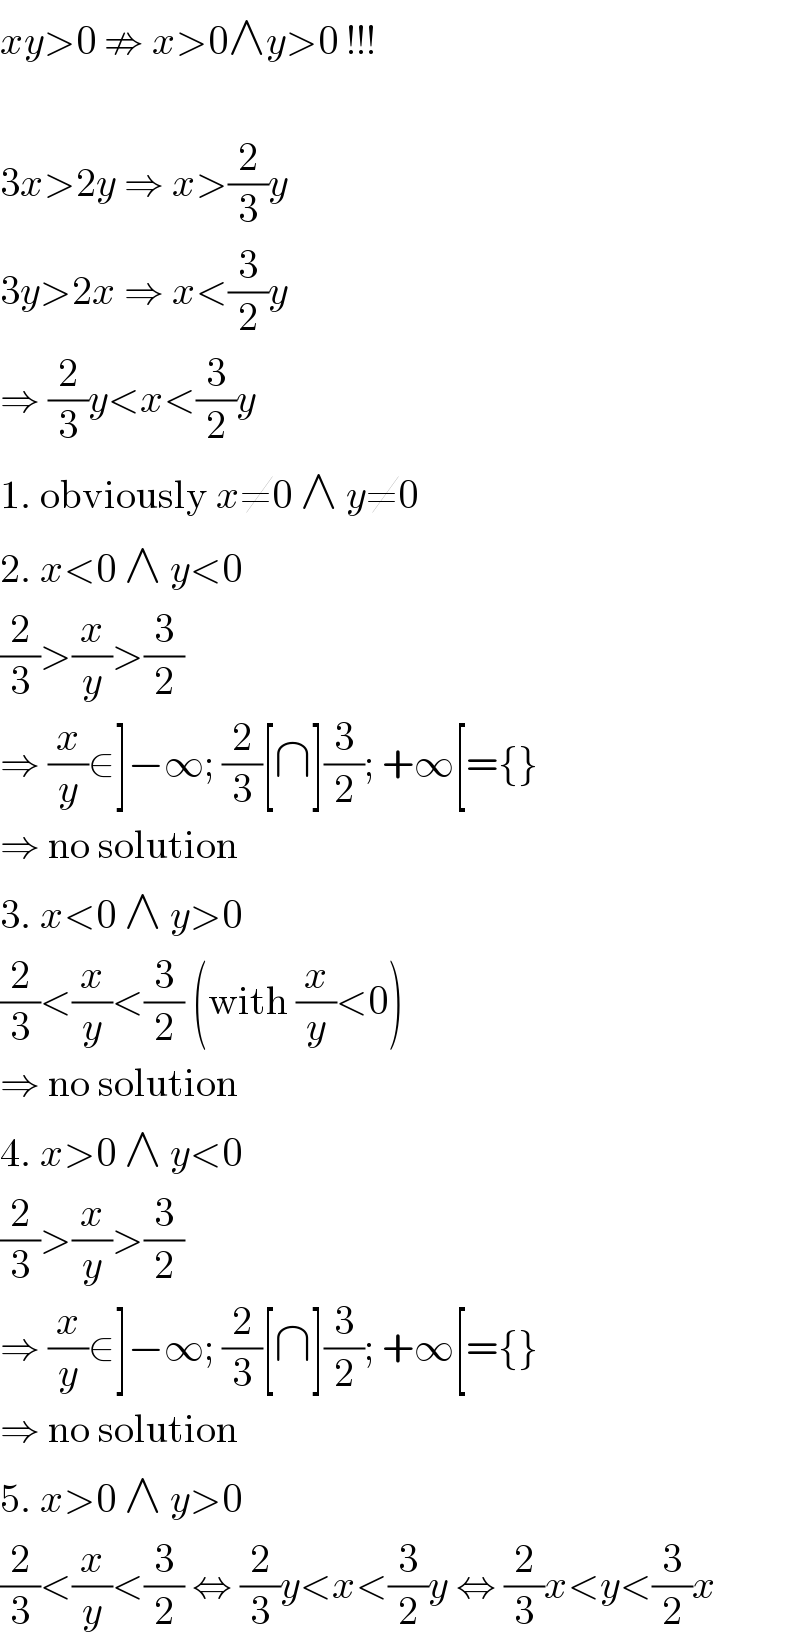 xy>0 ⇏ x>0∧y>0 !!!    3x>2y ⇒ x>(2/3)y  3y>2x ⇒ x<(3/2)y  ⇒ (2/3)y<x<(3/2)y  1. obviously x≠0 ∧ y≠0  2. x<0 ∧ y<0  (2/3)>(x/y)>(3/2)  ⇒ (x/y)∈]−∞; (2/3)[∩](3/2); +∞[={}  ⇒ no solution  3. x<0 ∧ y>0  (2/3)<(x/y)<(3/2) (with (x/y)<0)  ⇒ no solution  4. x>0 ∧ y<0  (2/3)>(x/y)>(3/2)  ⇒ (x/y)∈]−∞; (2/3)[∩](3/2); +∞[={}  ⇒ no solution  5. x>0 ∧ y>0  (2/3)<(x/y)<(3/2) ⇔ (2/3)y<x<(3/2)y ⇔ (2/3)x<y<(3/2)x  